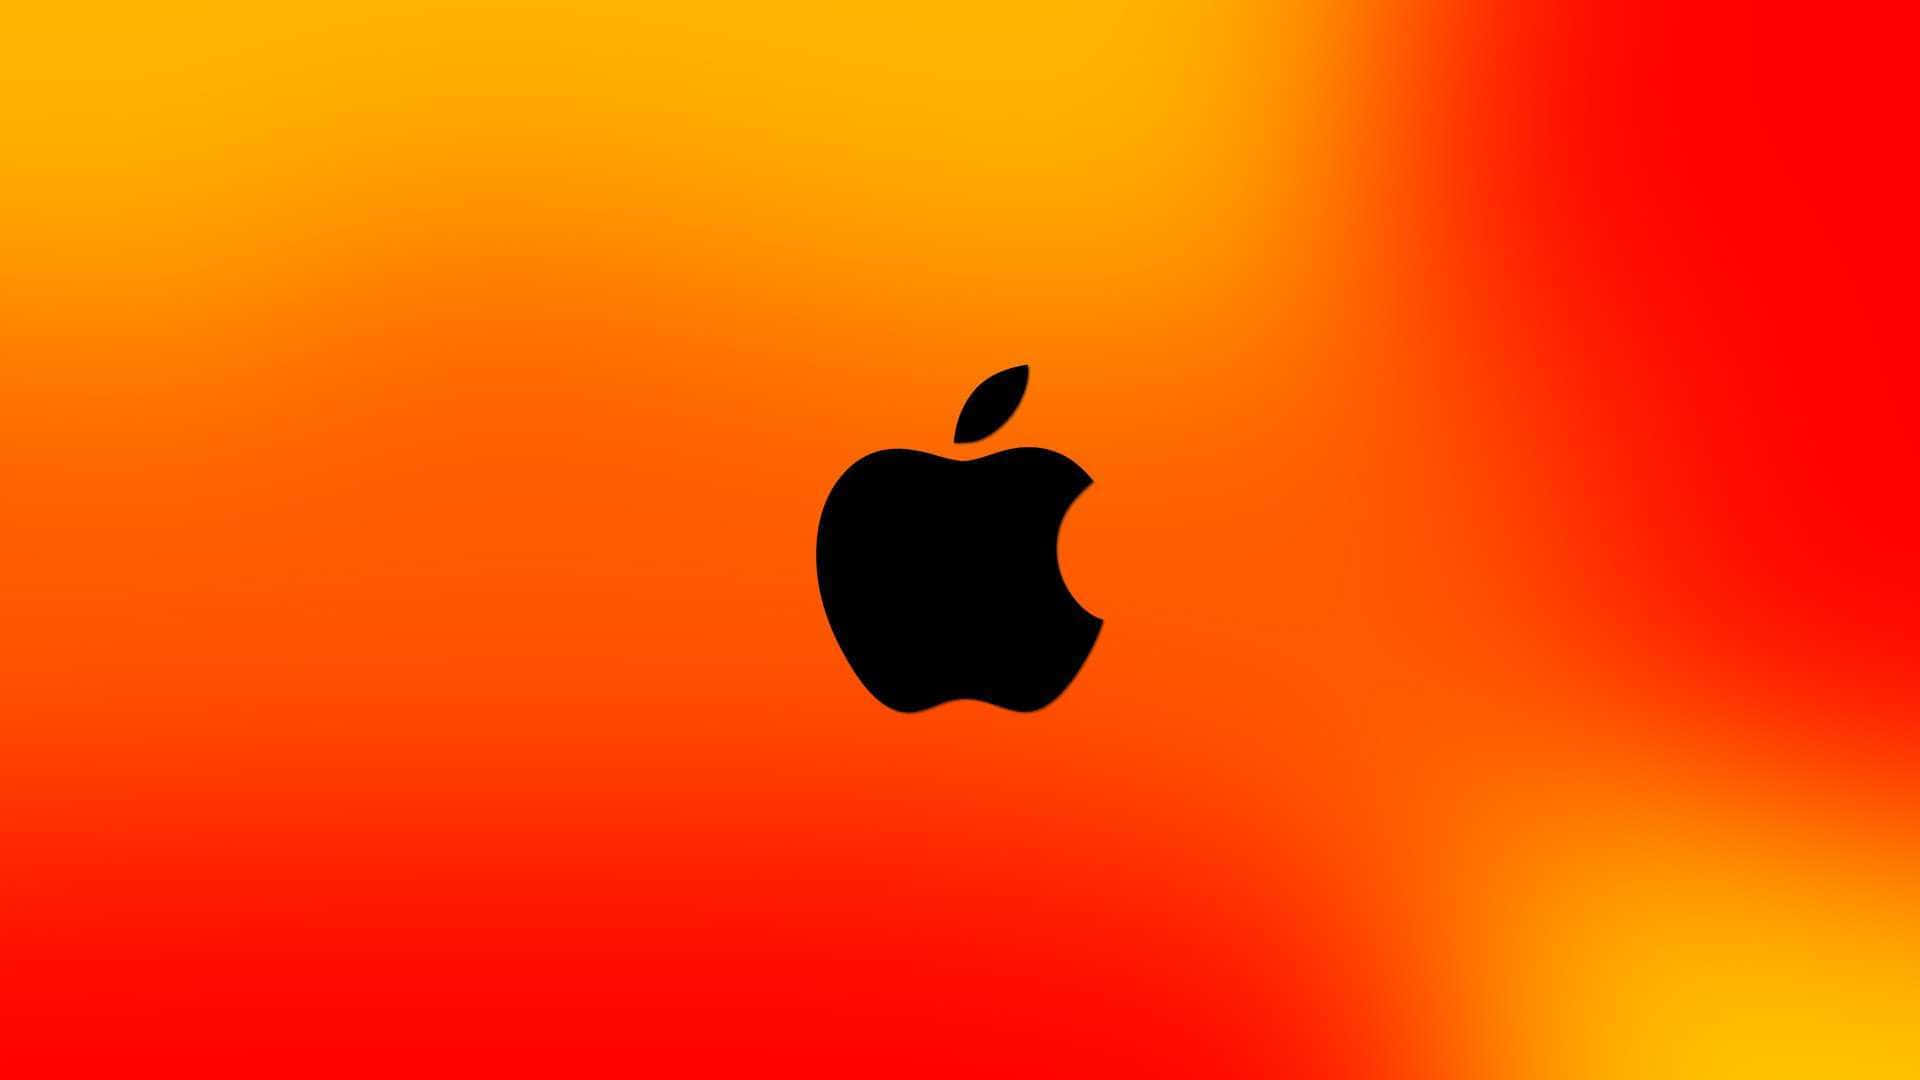 Schwarzesapple-logo In Verlaufsfarbe Orange Wallpaper